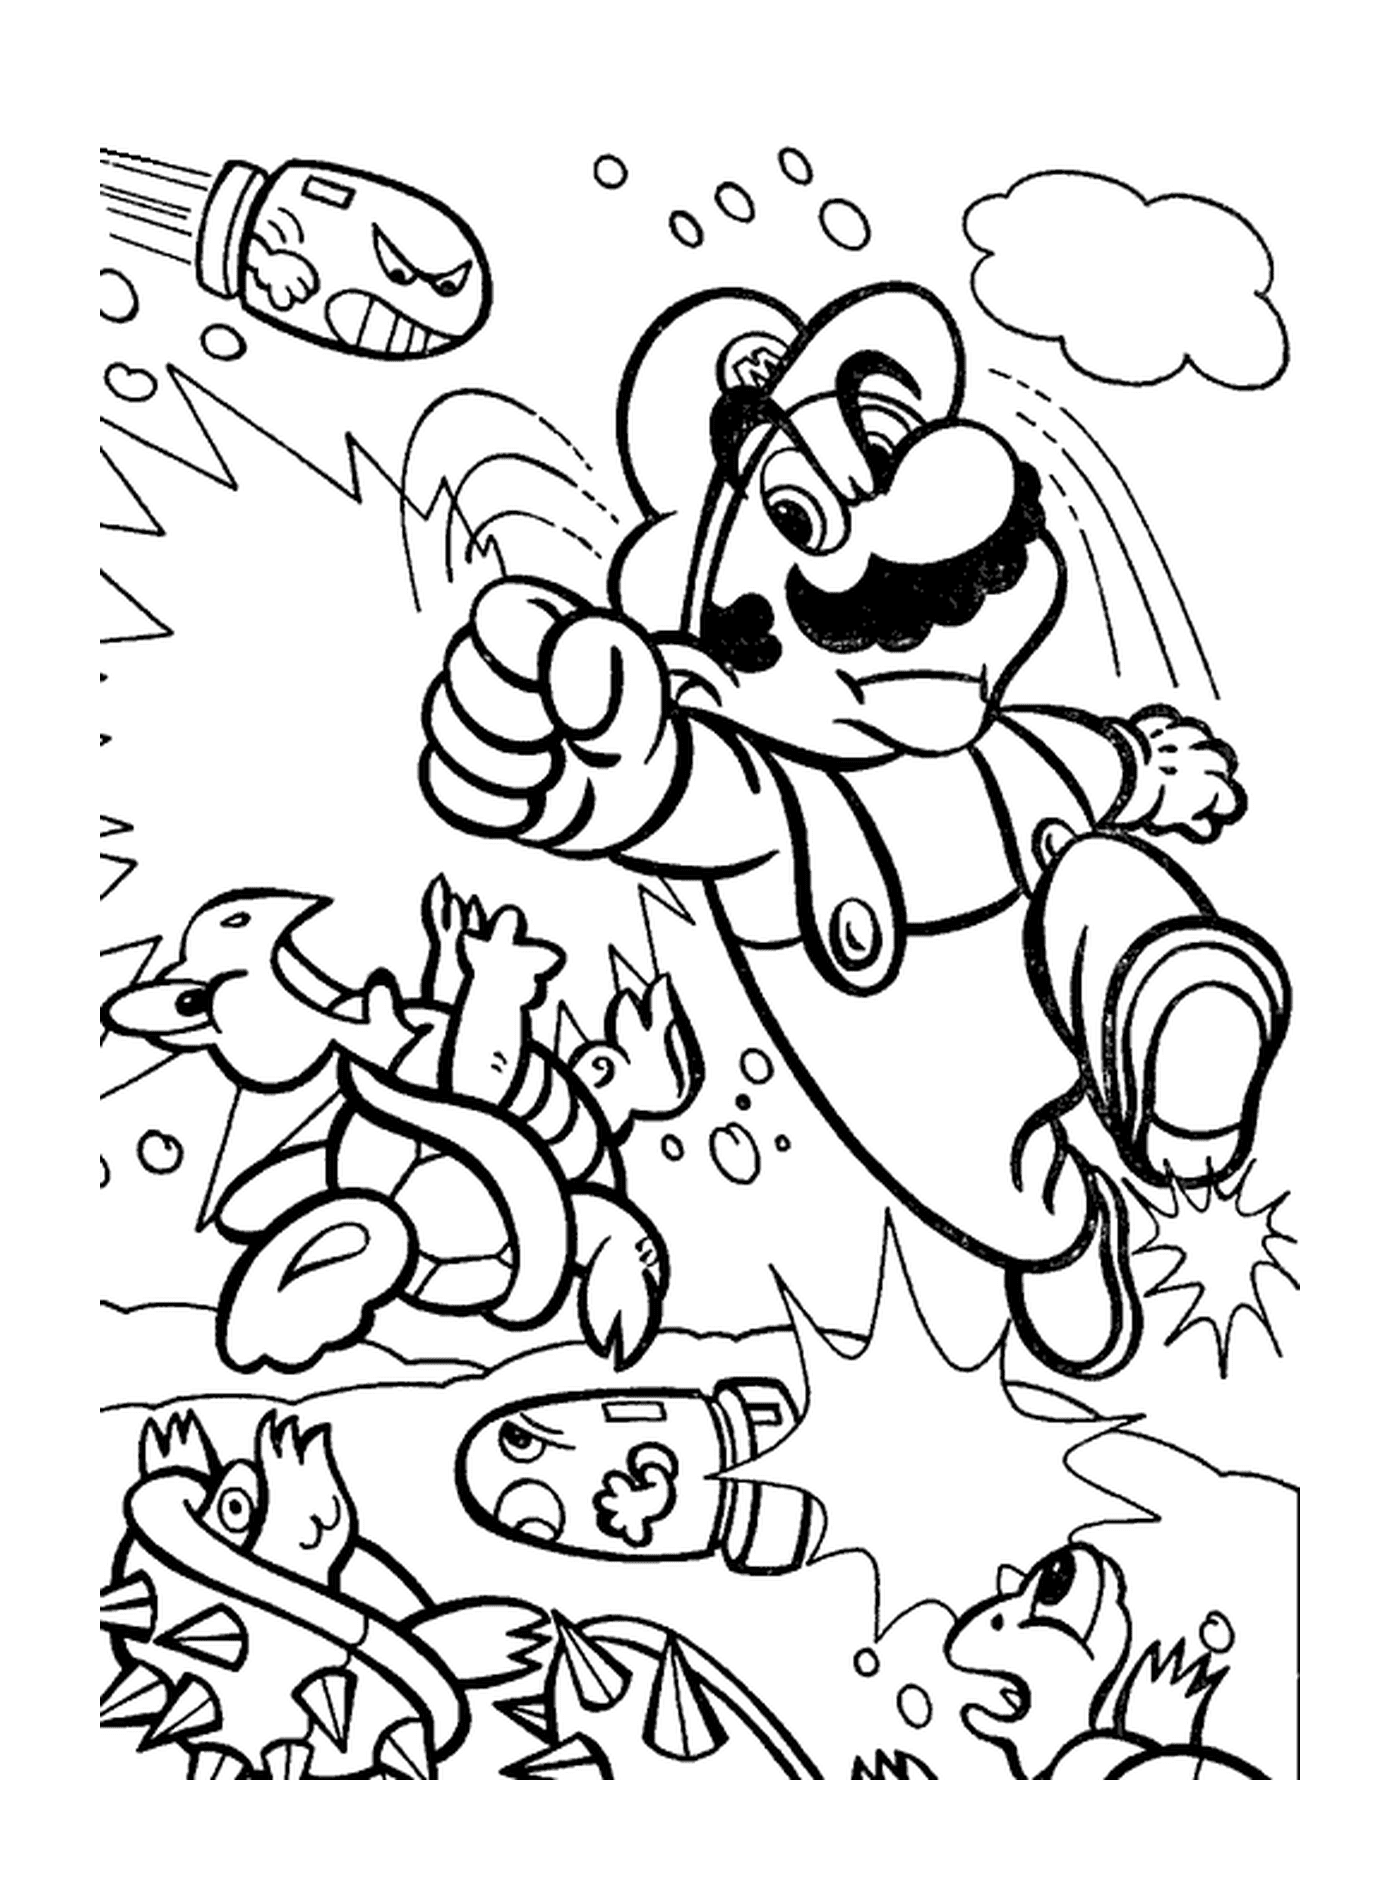  Mario lucha saltando en el aire 